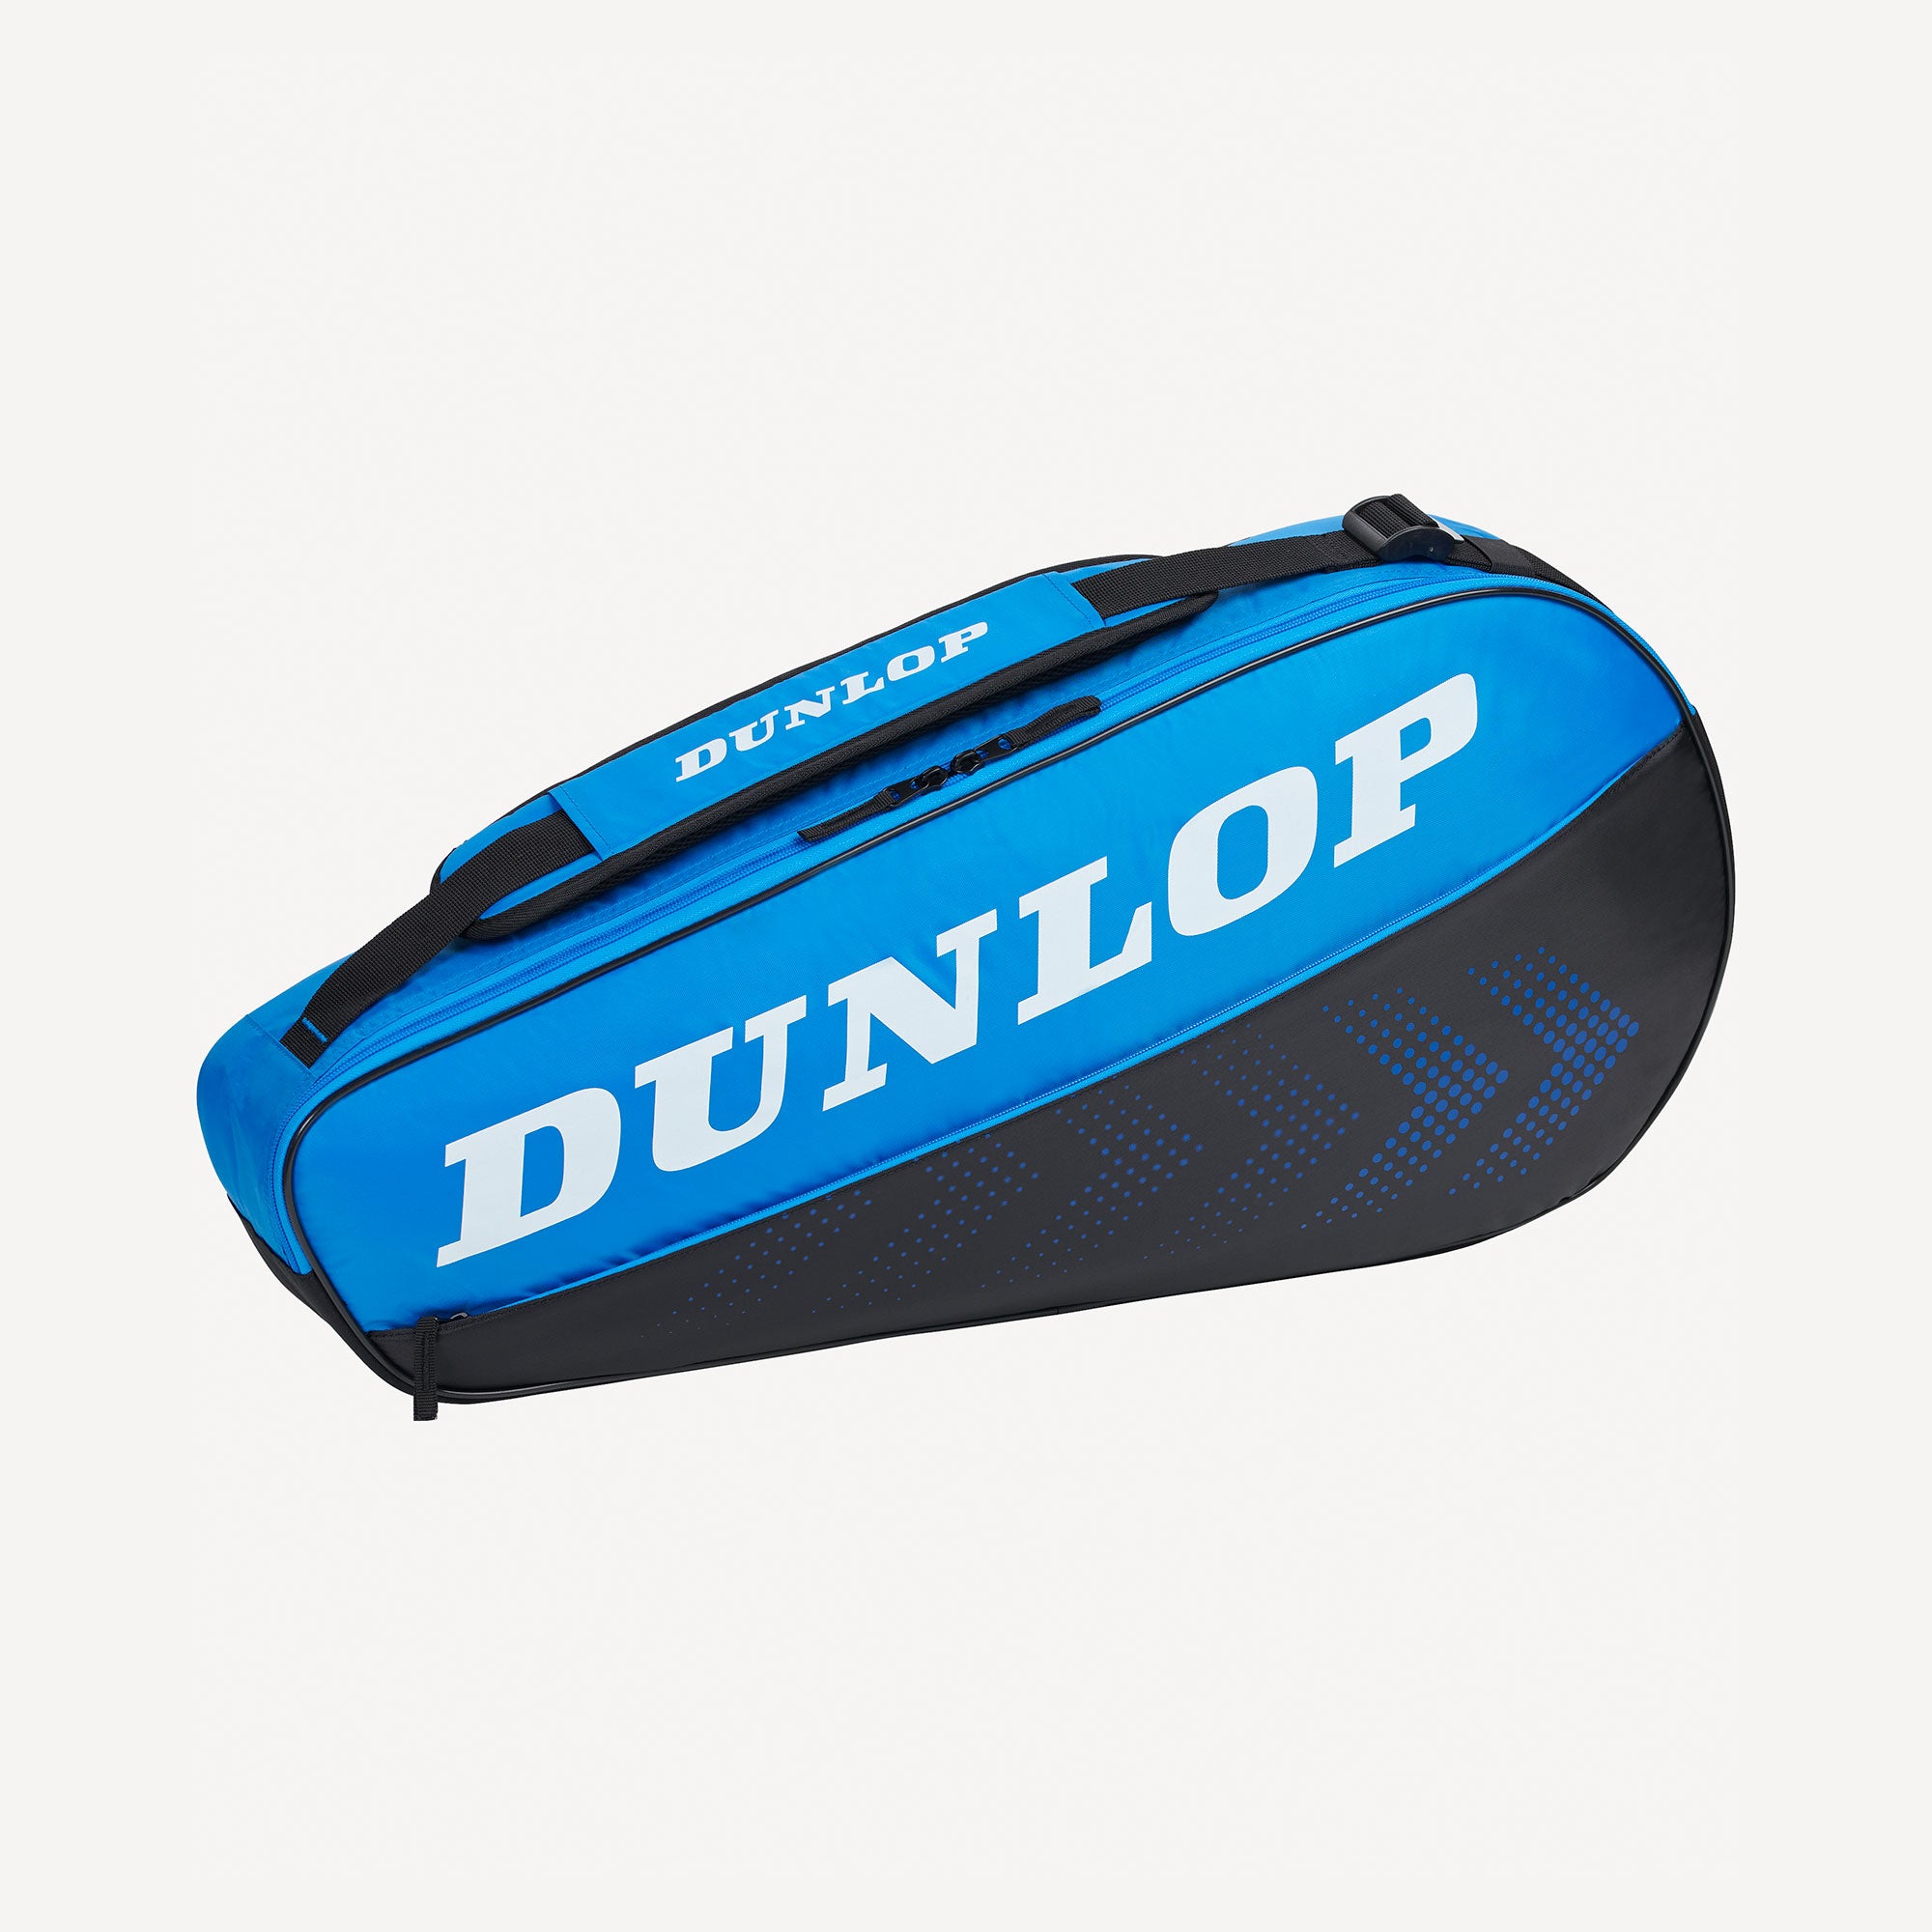 Dunlop FX Club 3 Racket Tennis Bag - Blue (1)